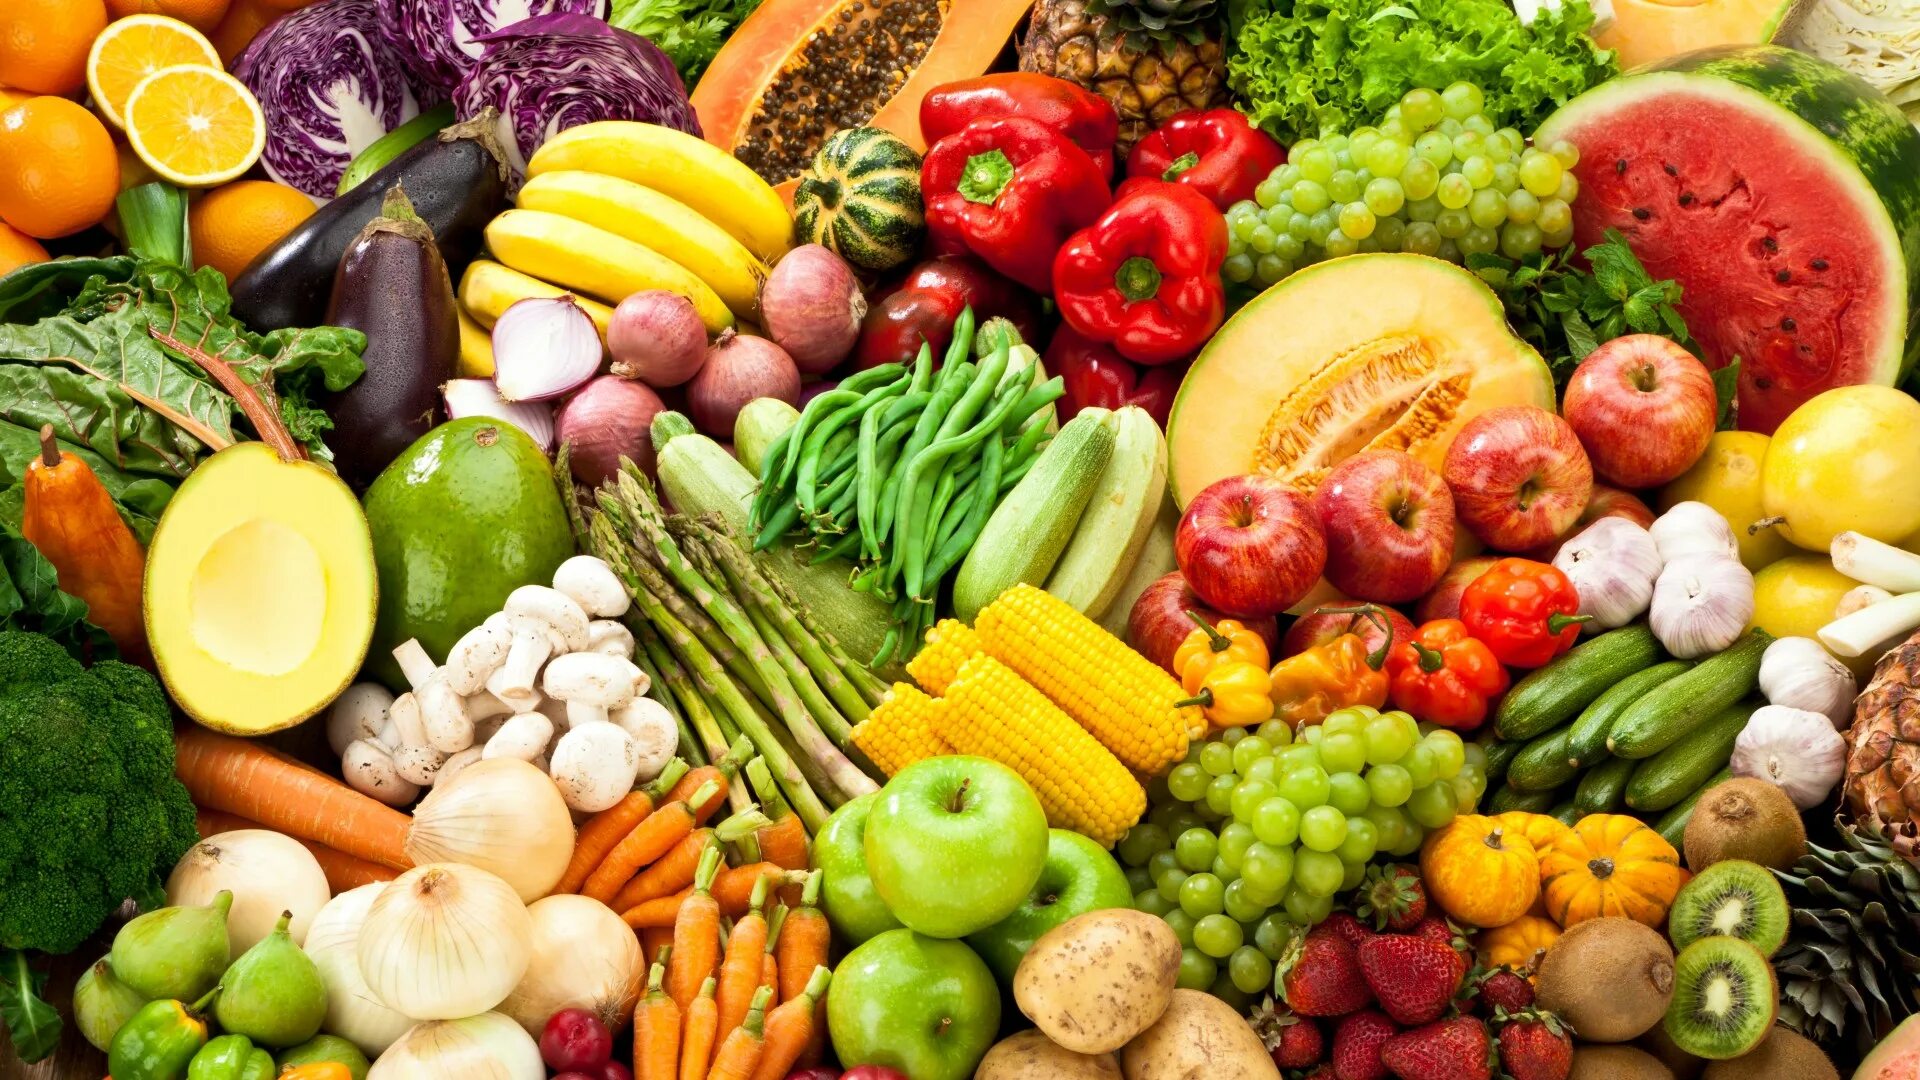 Find vegetables. Овощи и фрукты. Здоровое питание. Продукты овощи. Растительная пища.